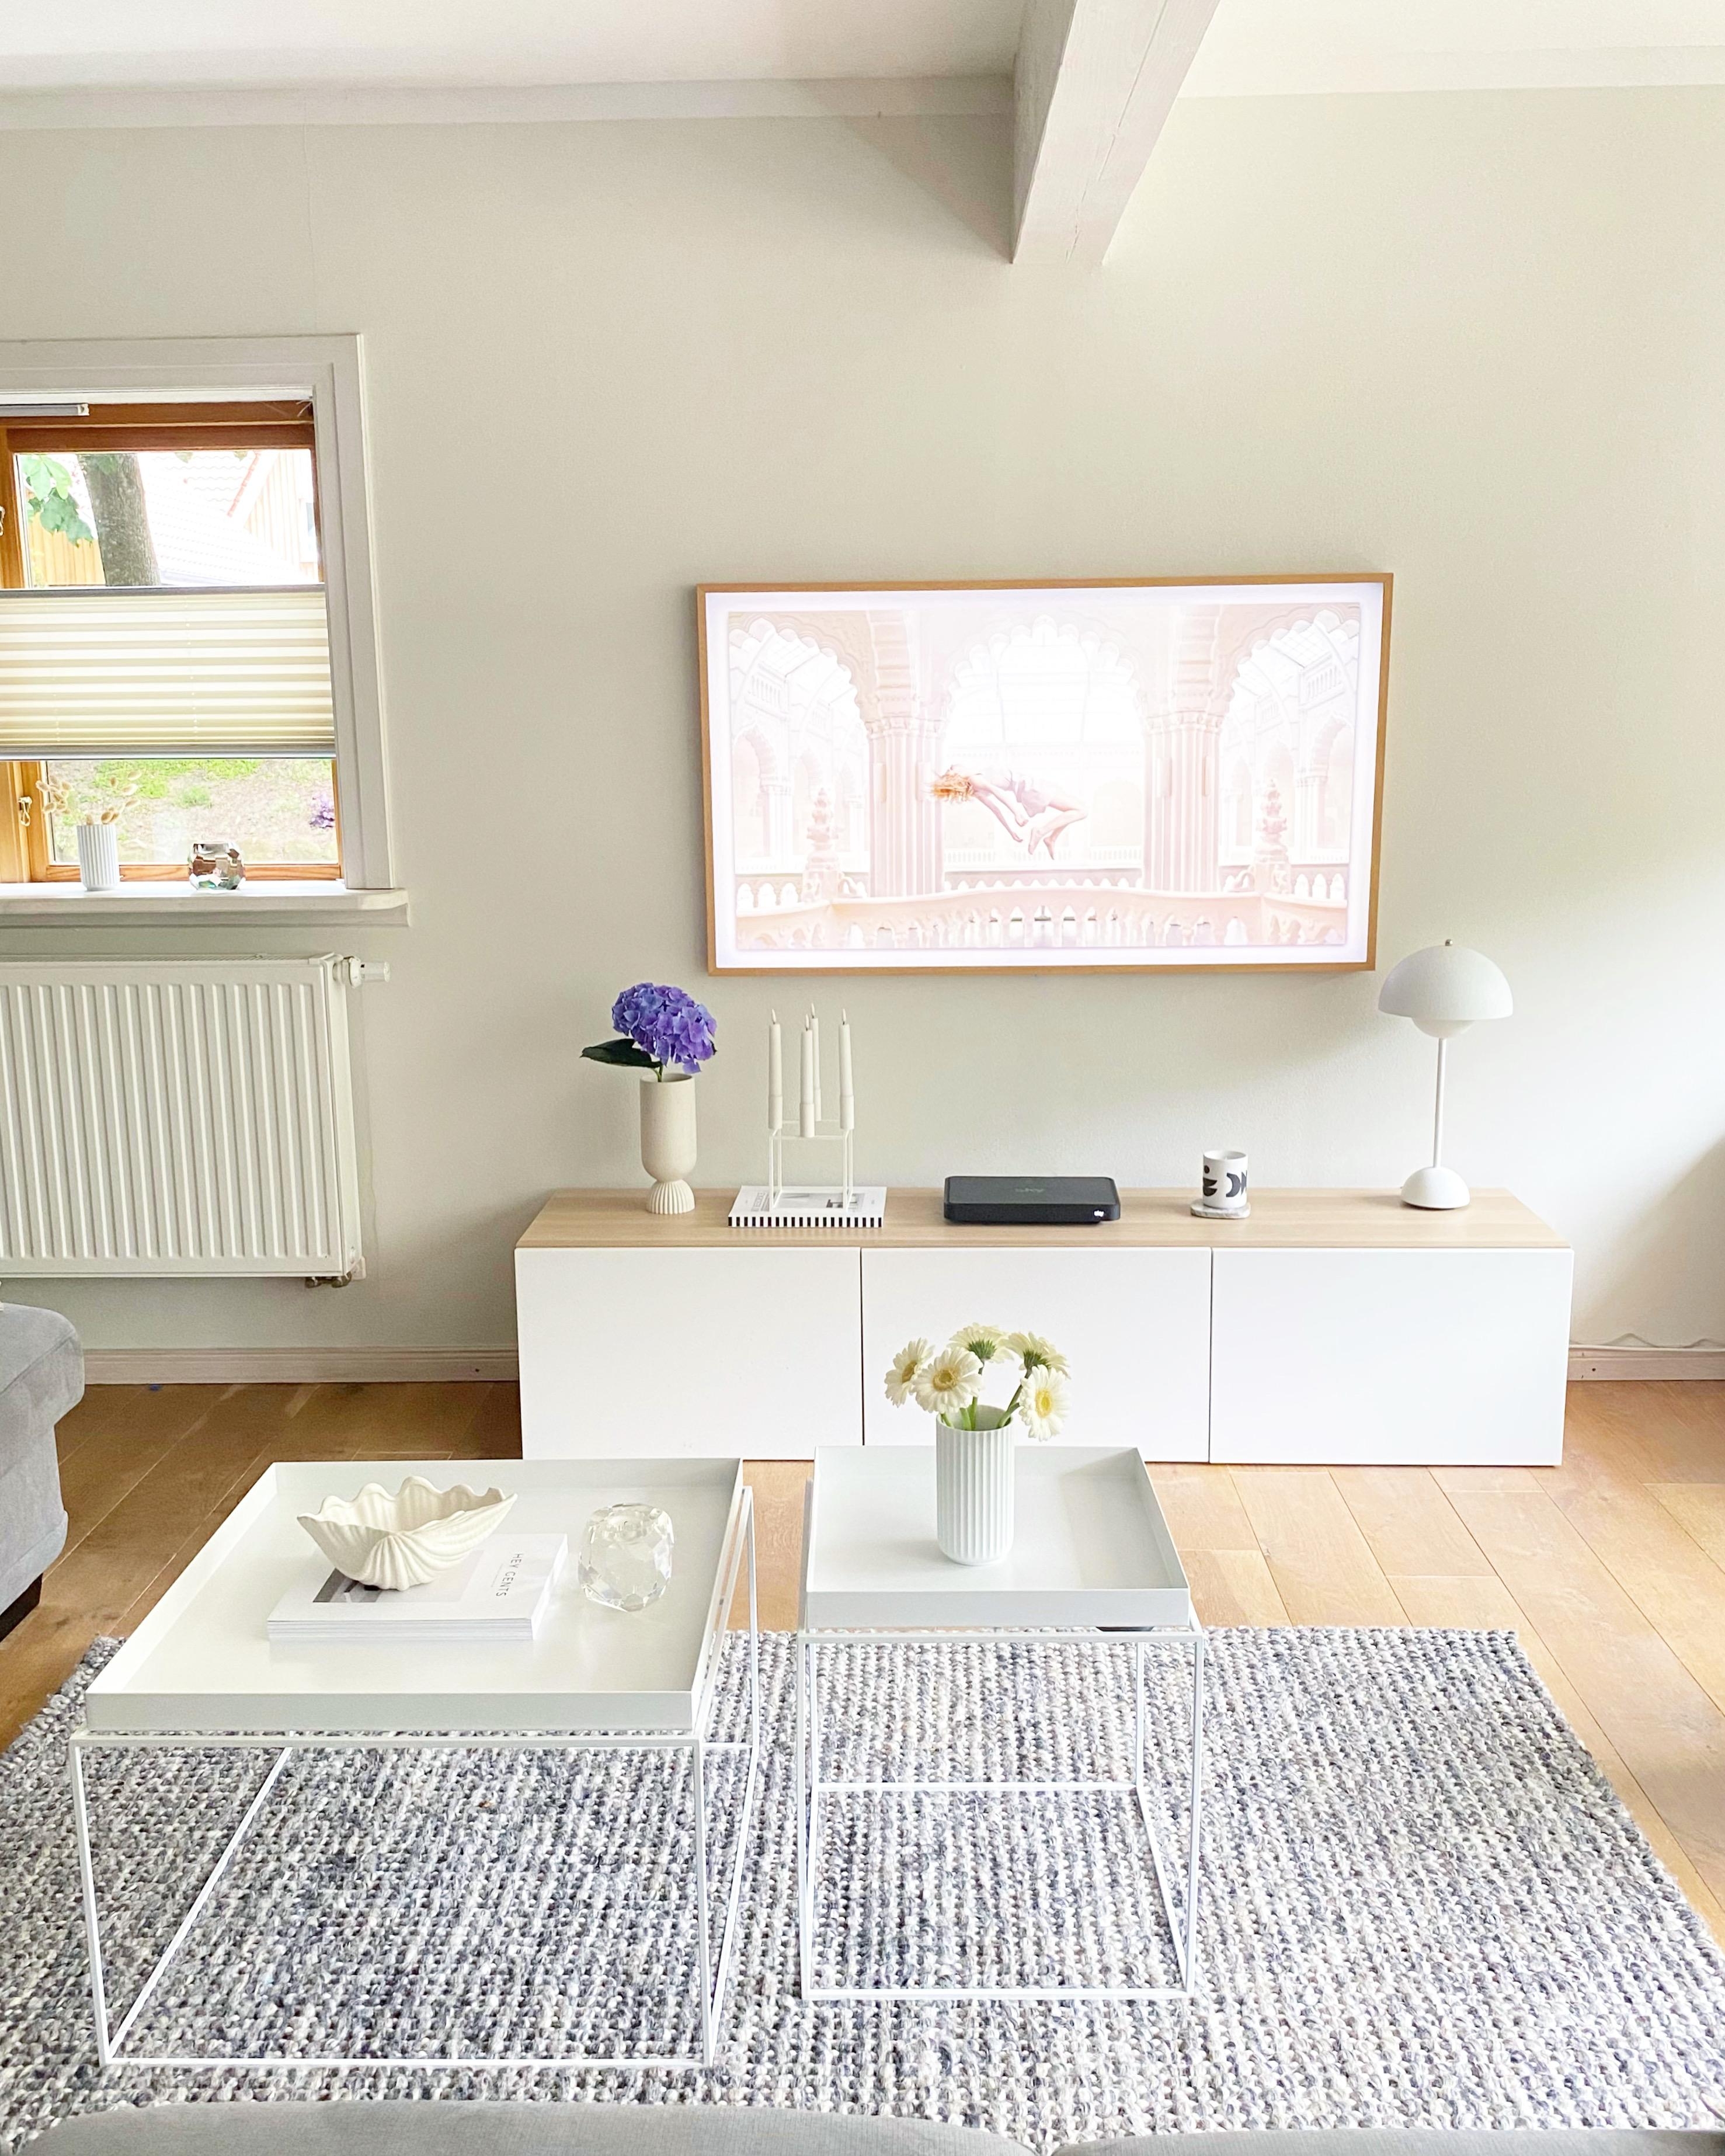 #wohnzimmer #couchtisch #tvboard #fernseher #blumendeko #holzhausromantik 